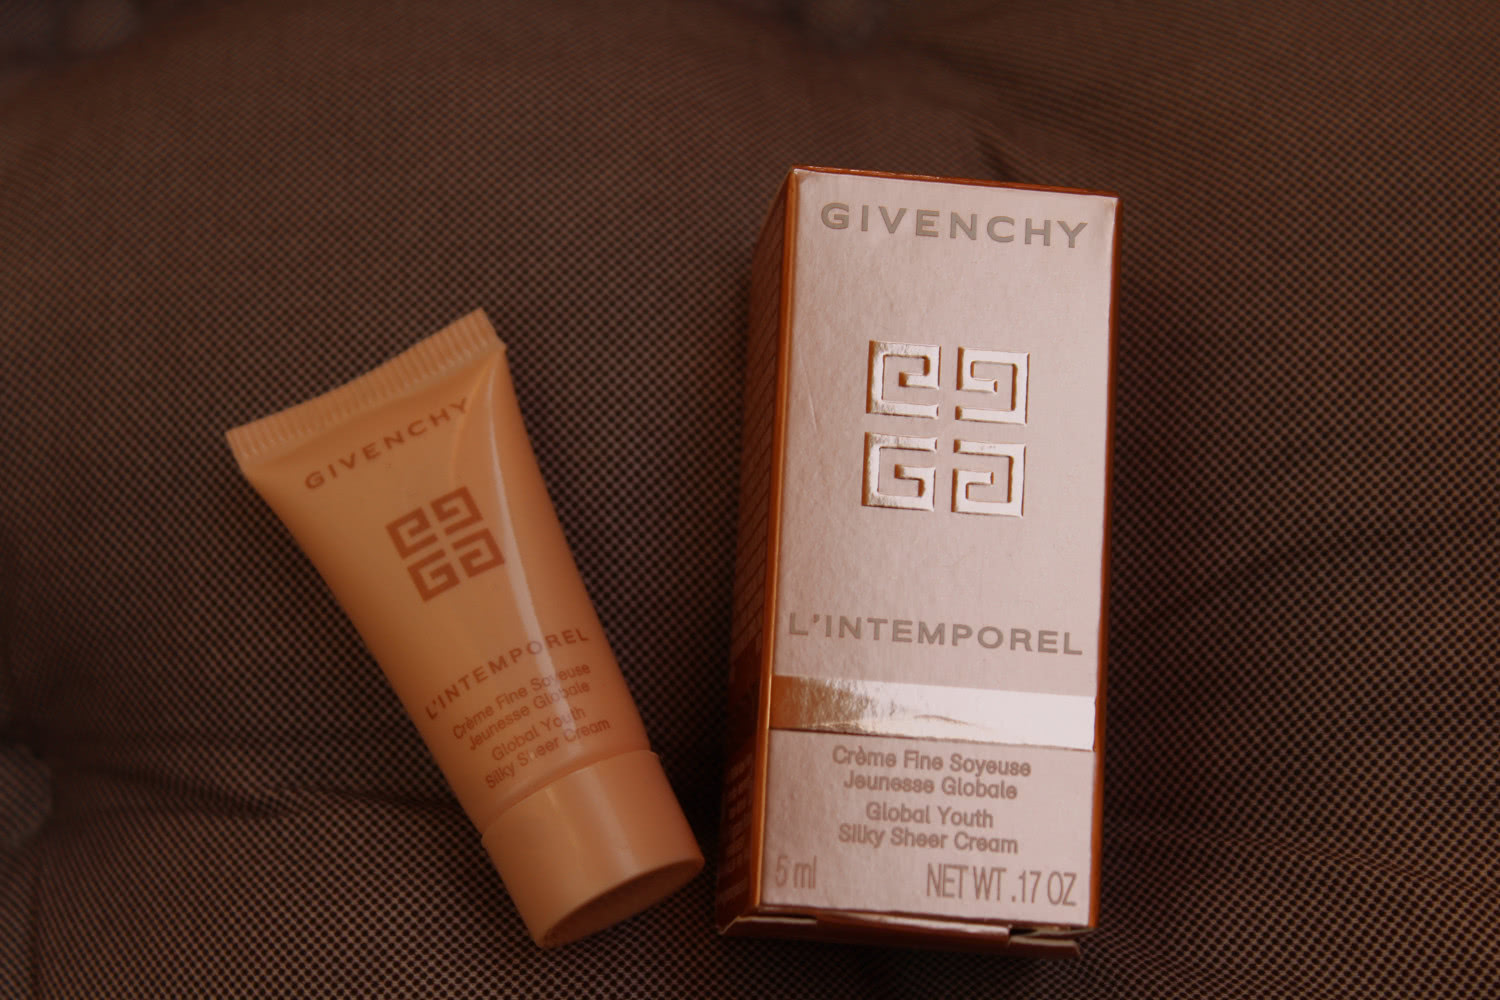 Givenchy L'Intemporel нежный шелковистый крем для глобальной молодости кожи